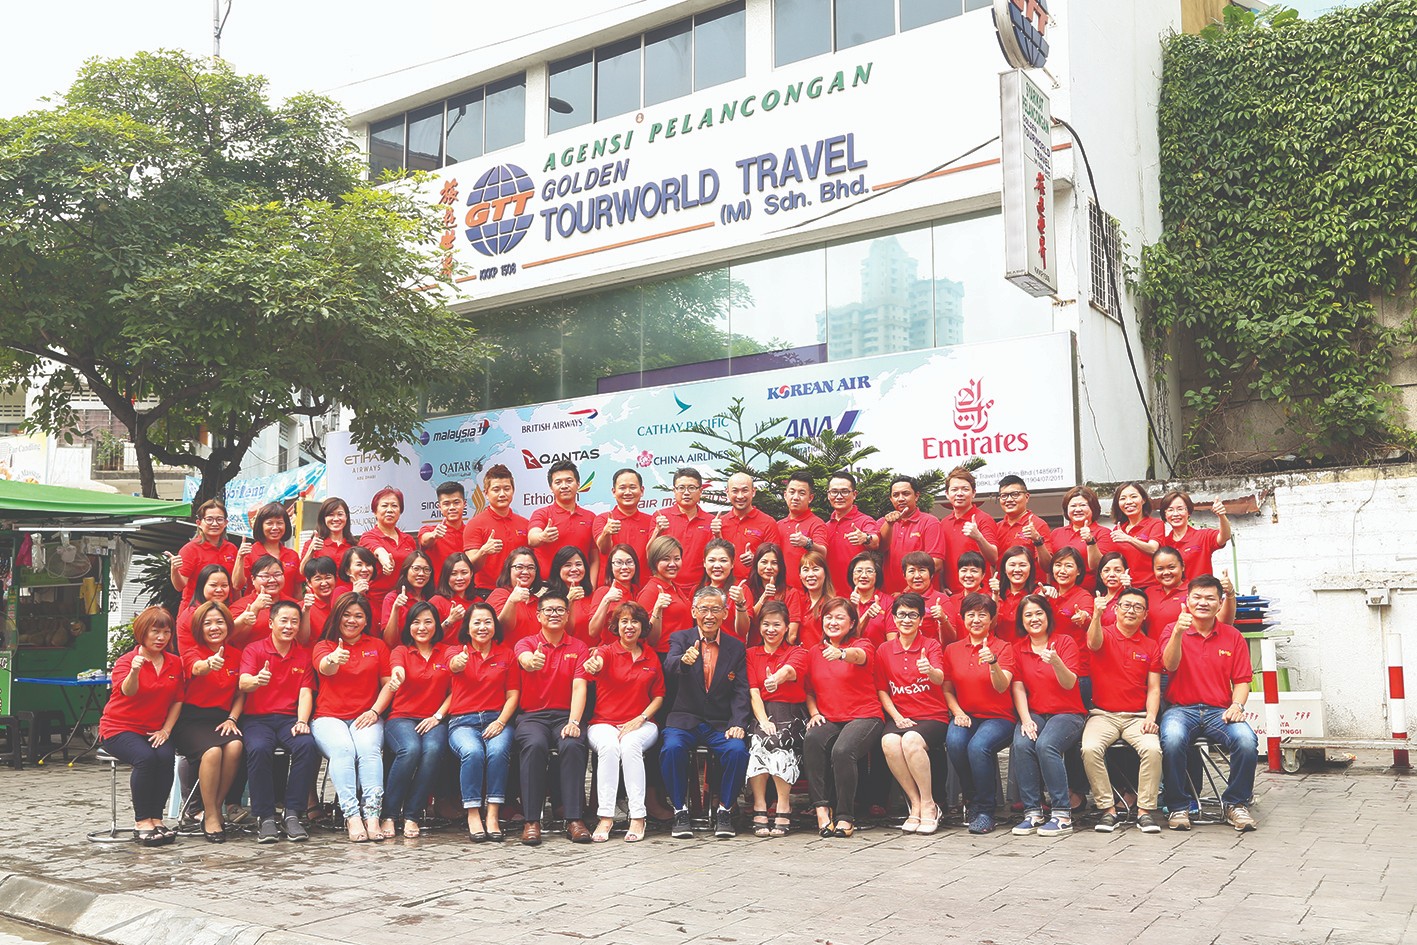 golden tourworld travel (m) sdn bhd services